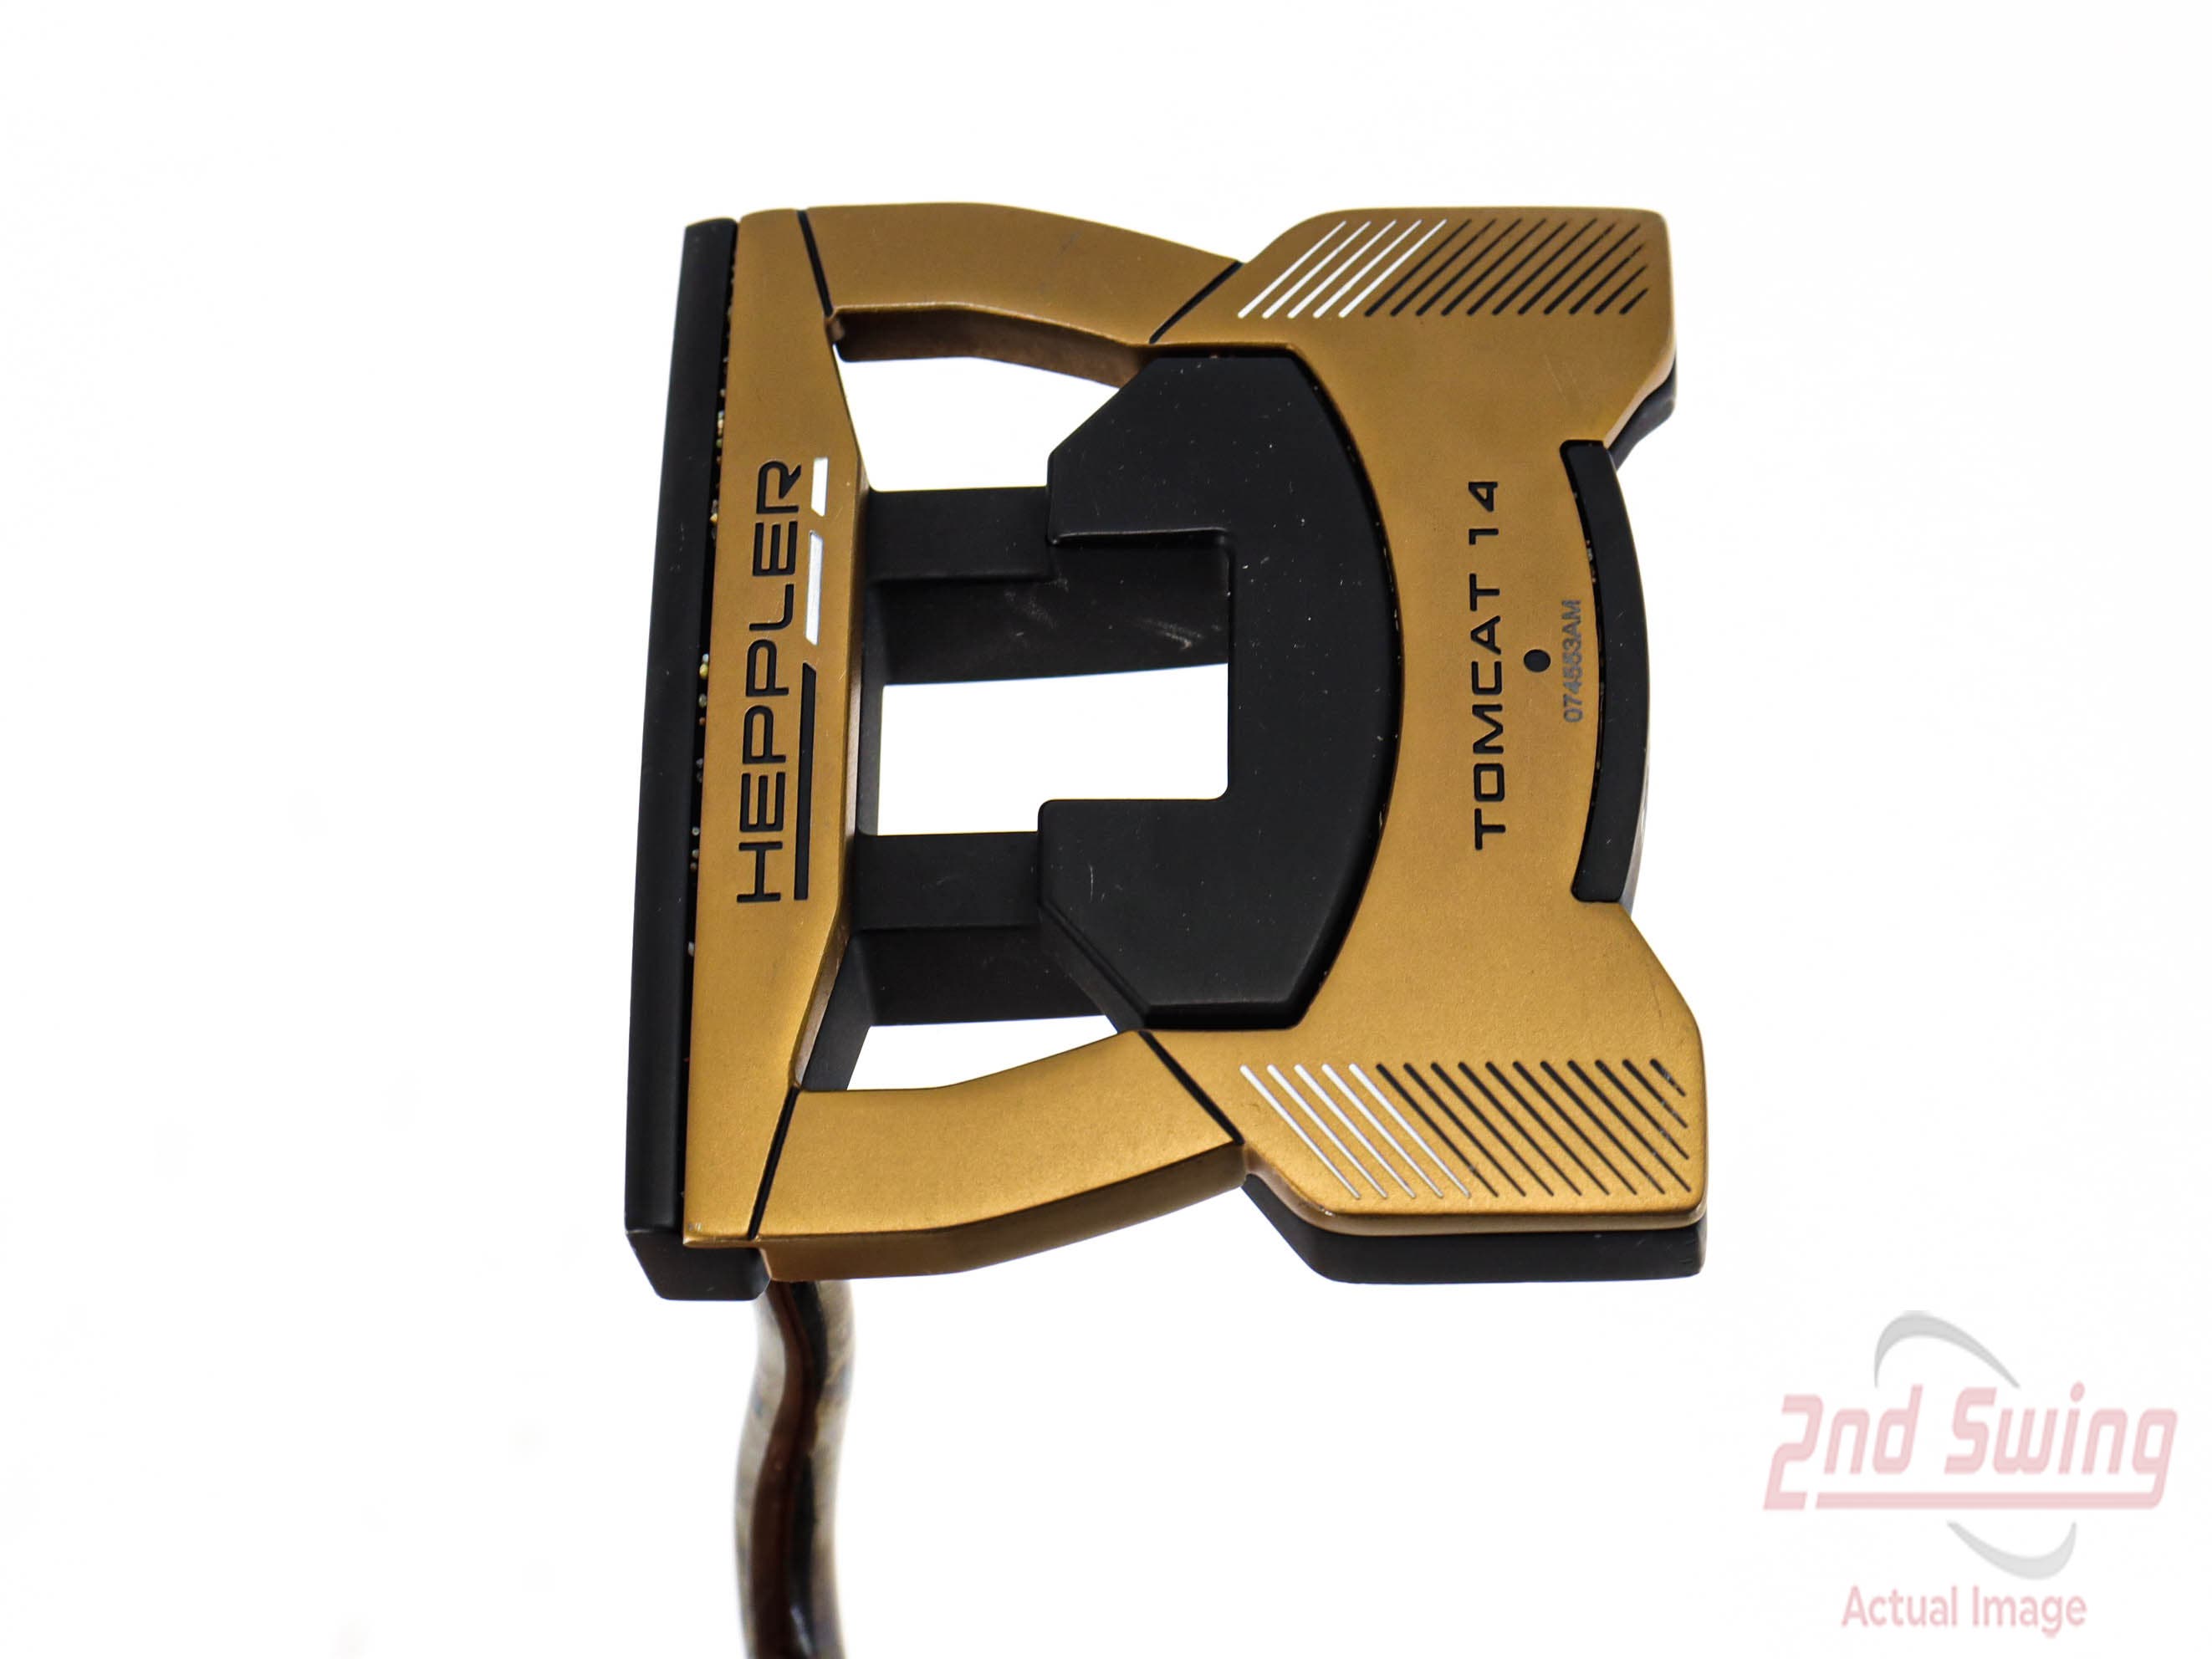 Ping Heppler Tomcat 14 Putter (A-42438200339) | 2nd Swing Golf